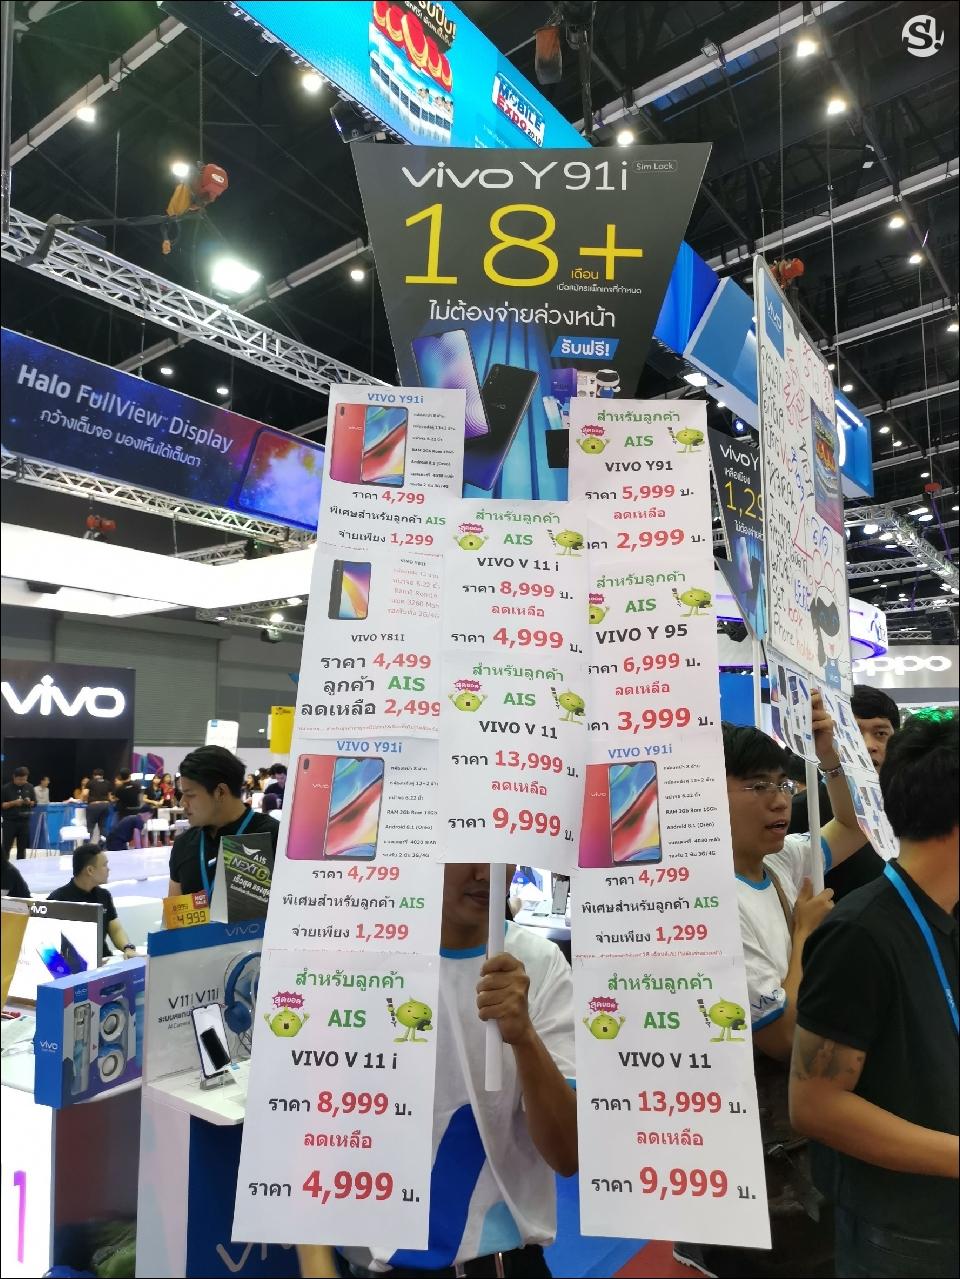 รวมโปรโมชั่นเด็ดจากบูธ Truemove H ในงาน Thailand Mobile Expo 2019